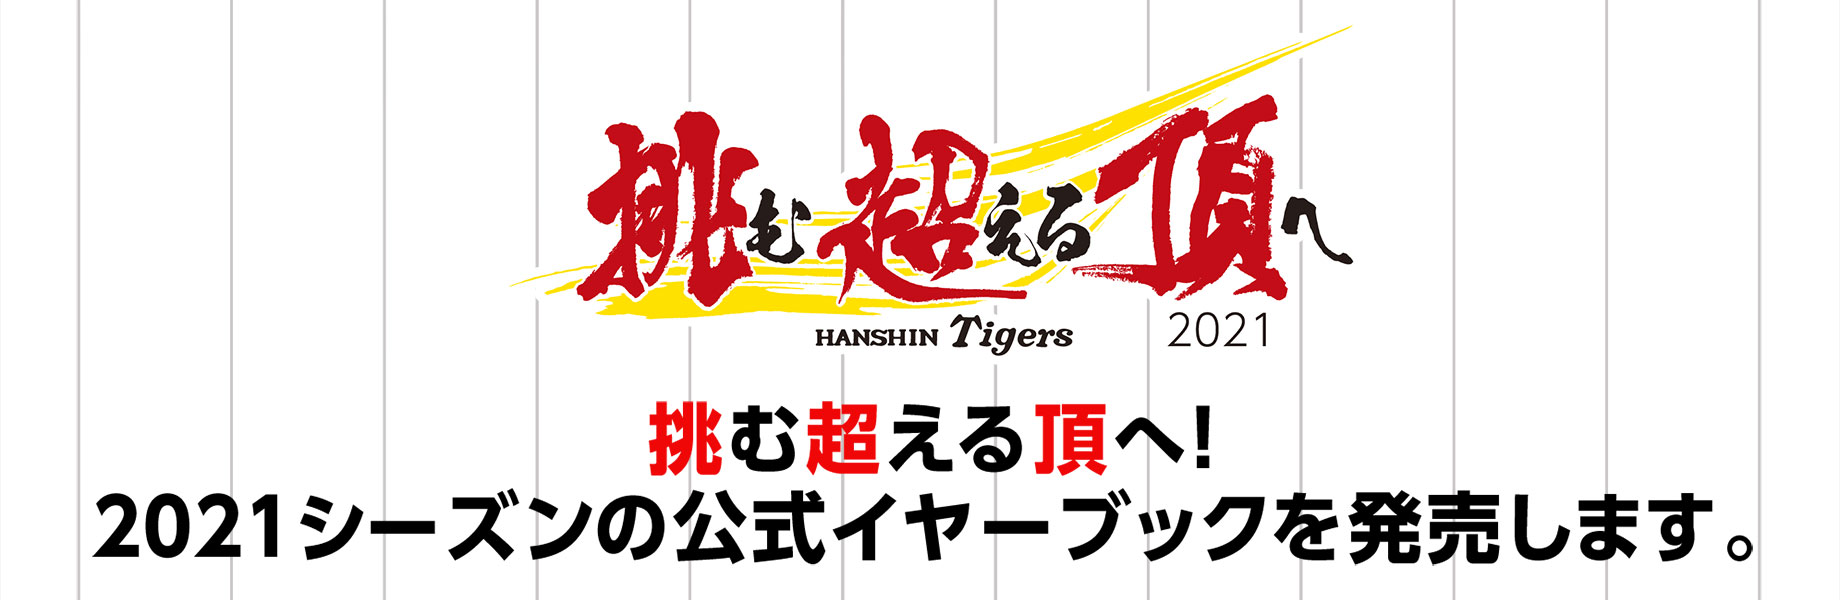 タイガース 2021 阪神 日程